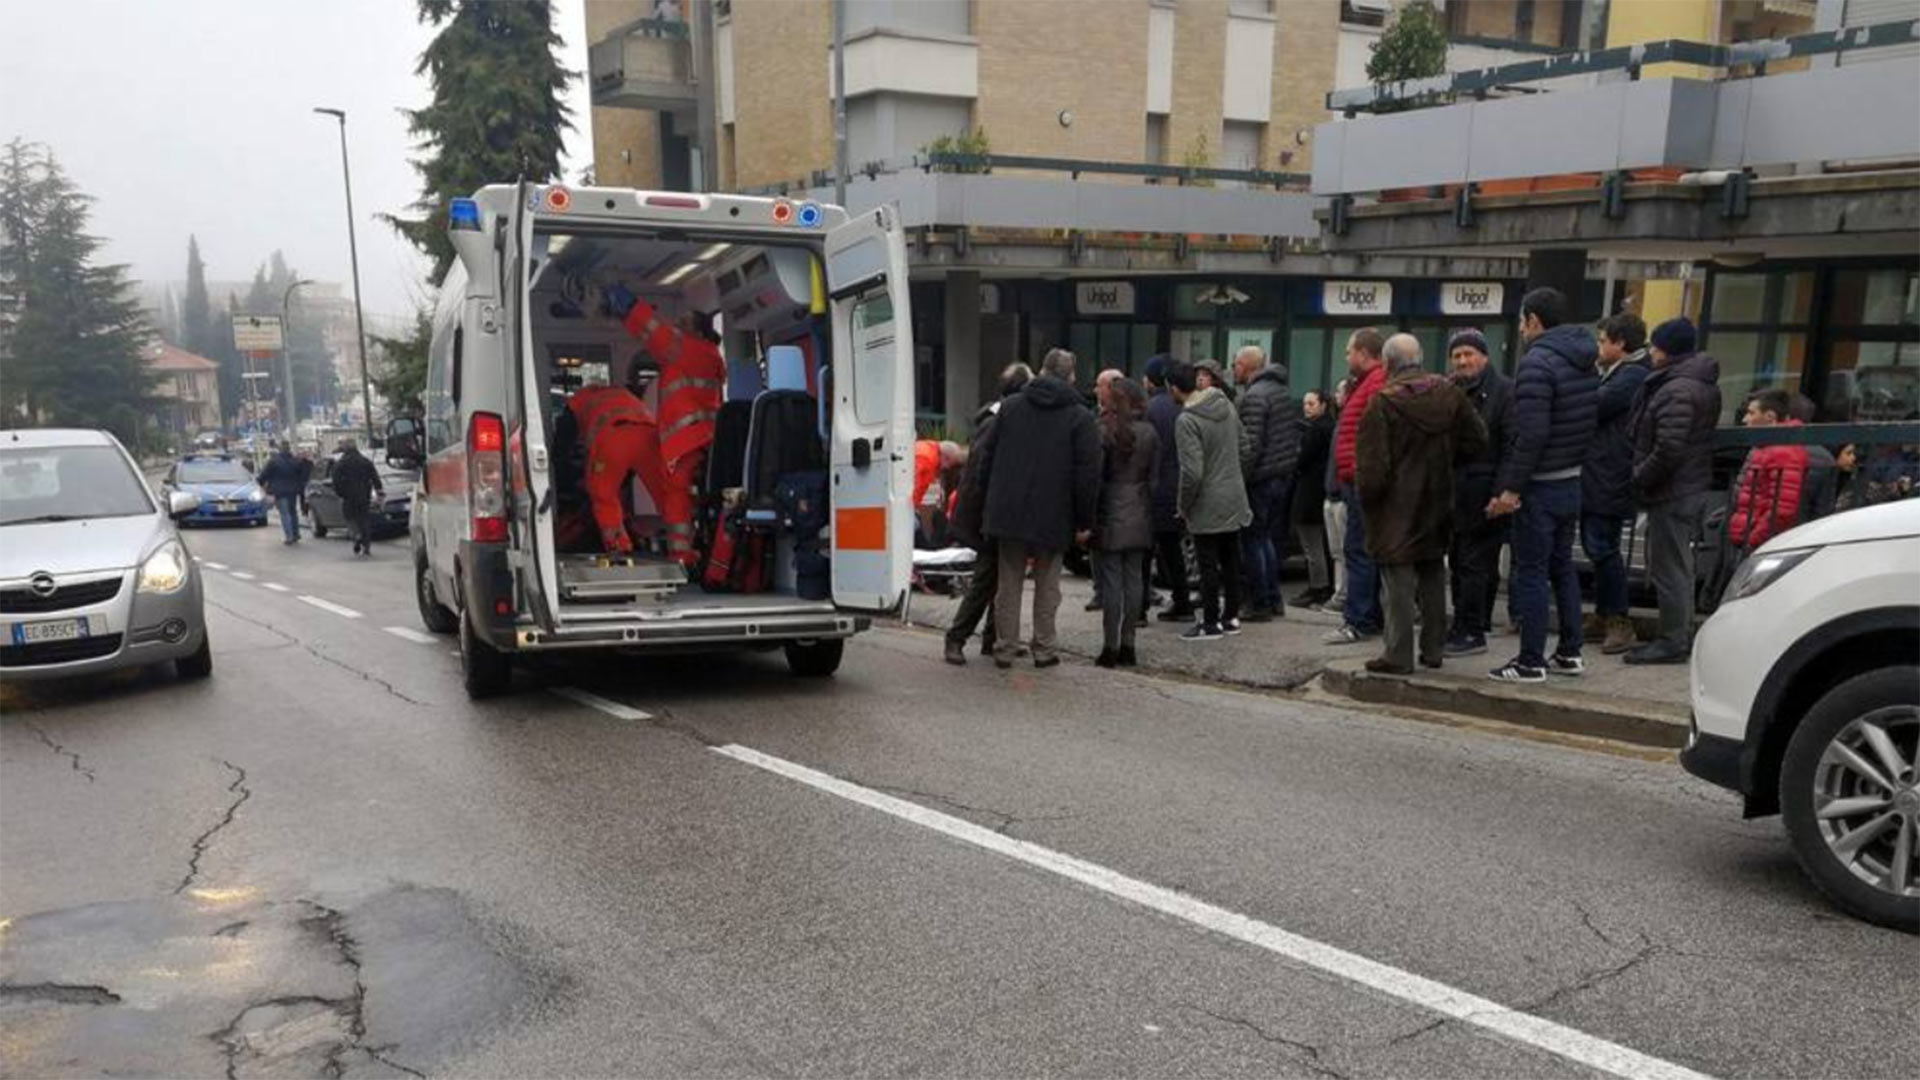 Detenido un miembro de la Liga Norte tras un ataque racista con al menos seis heridos en Macerata